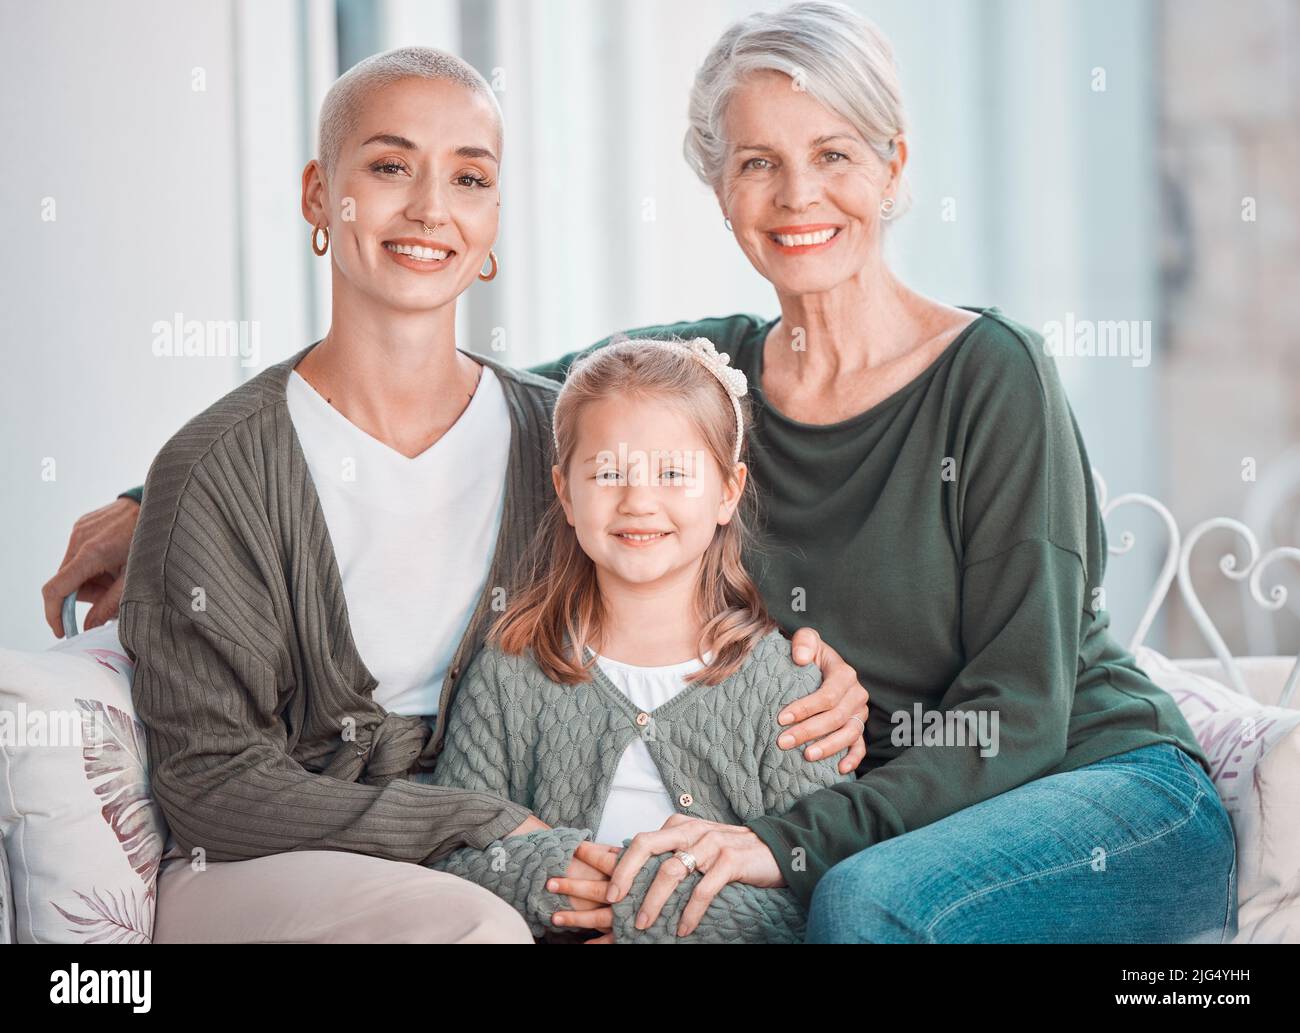 Drei Generationen von Frauen sitzen zusammen und schauen auf die Kamera. Porträt eines entzückenden kleinen Mädchens, das sich mit ihrer Mutter und Großmutter verklebt Stockfoto